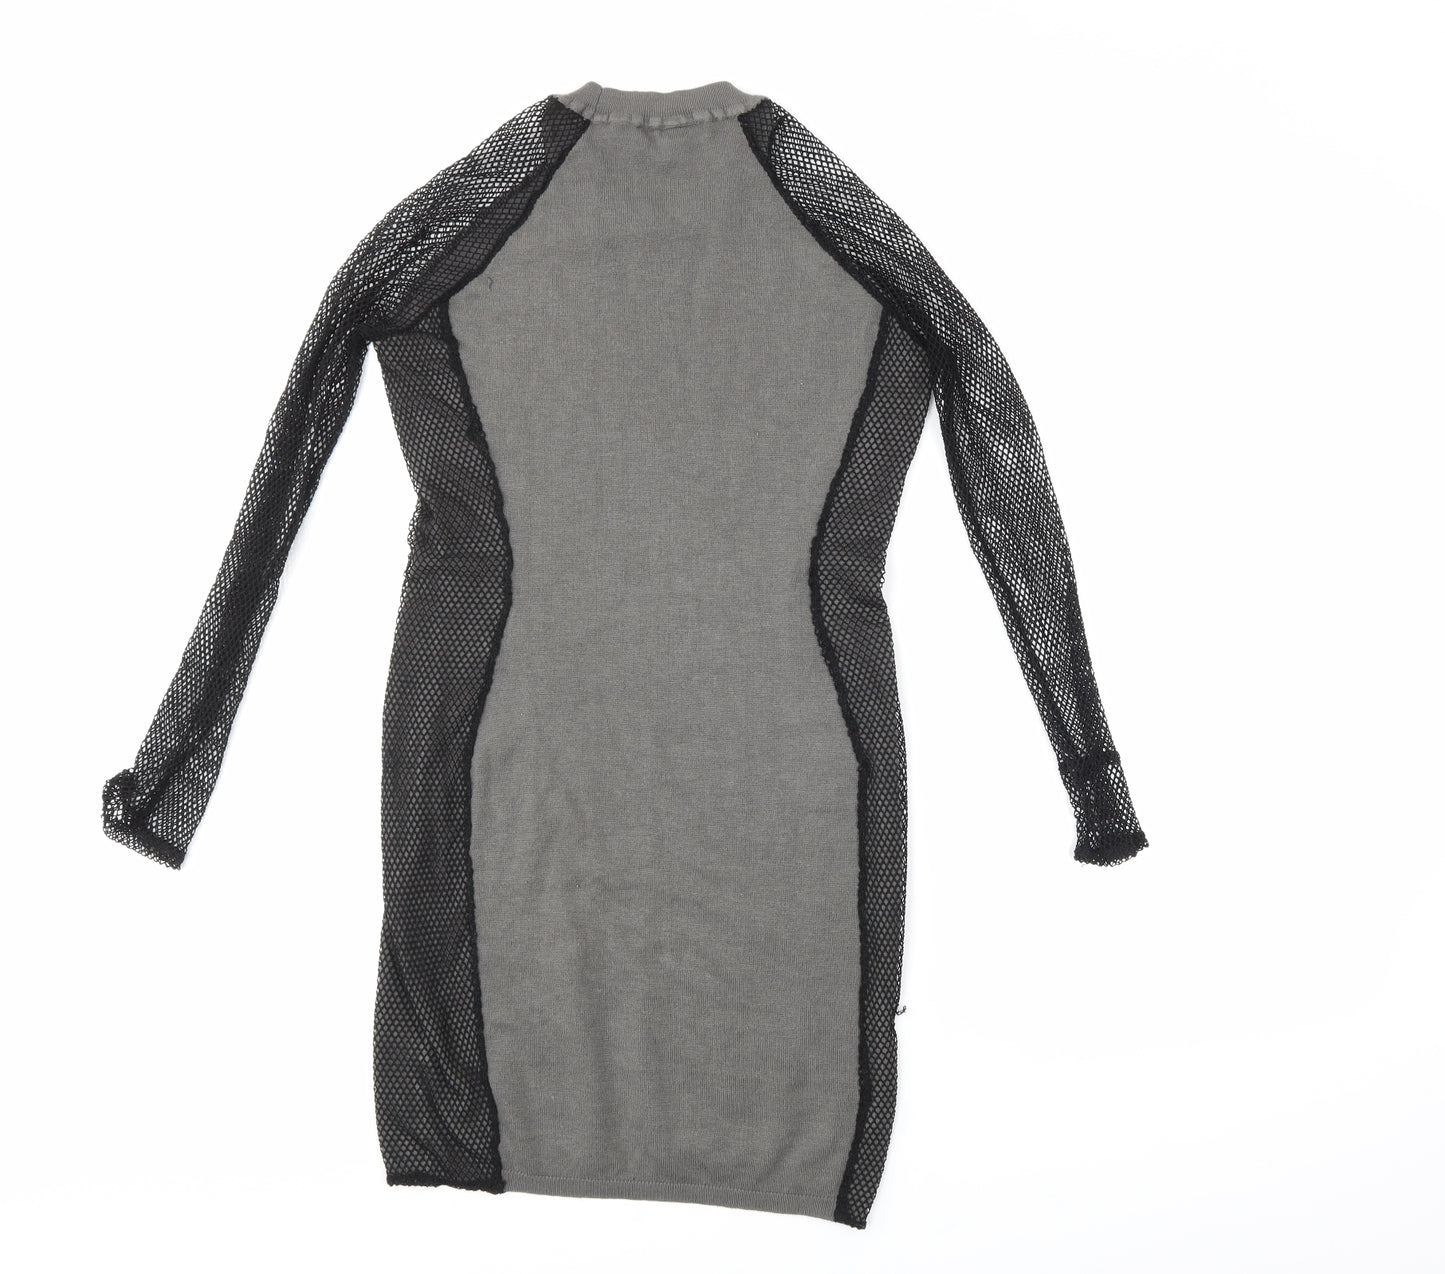 Derek Heart Womens Grey   Jumper Dress  Size M